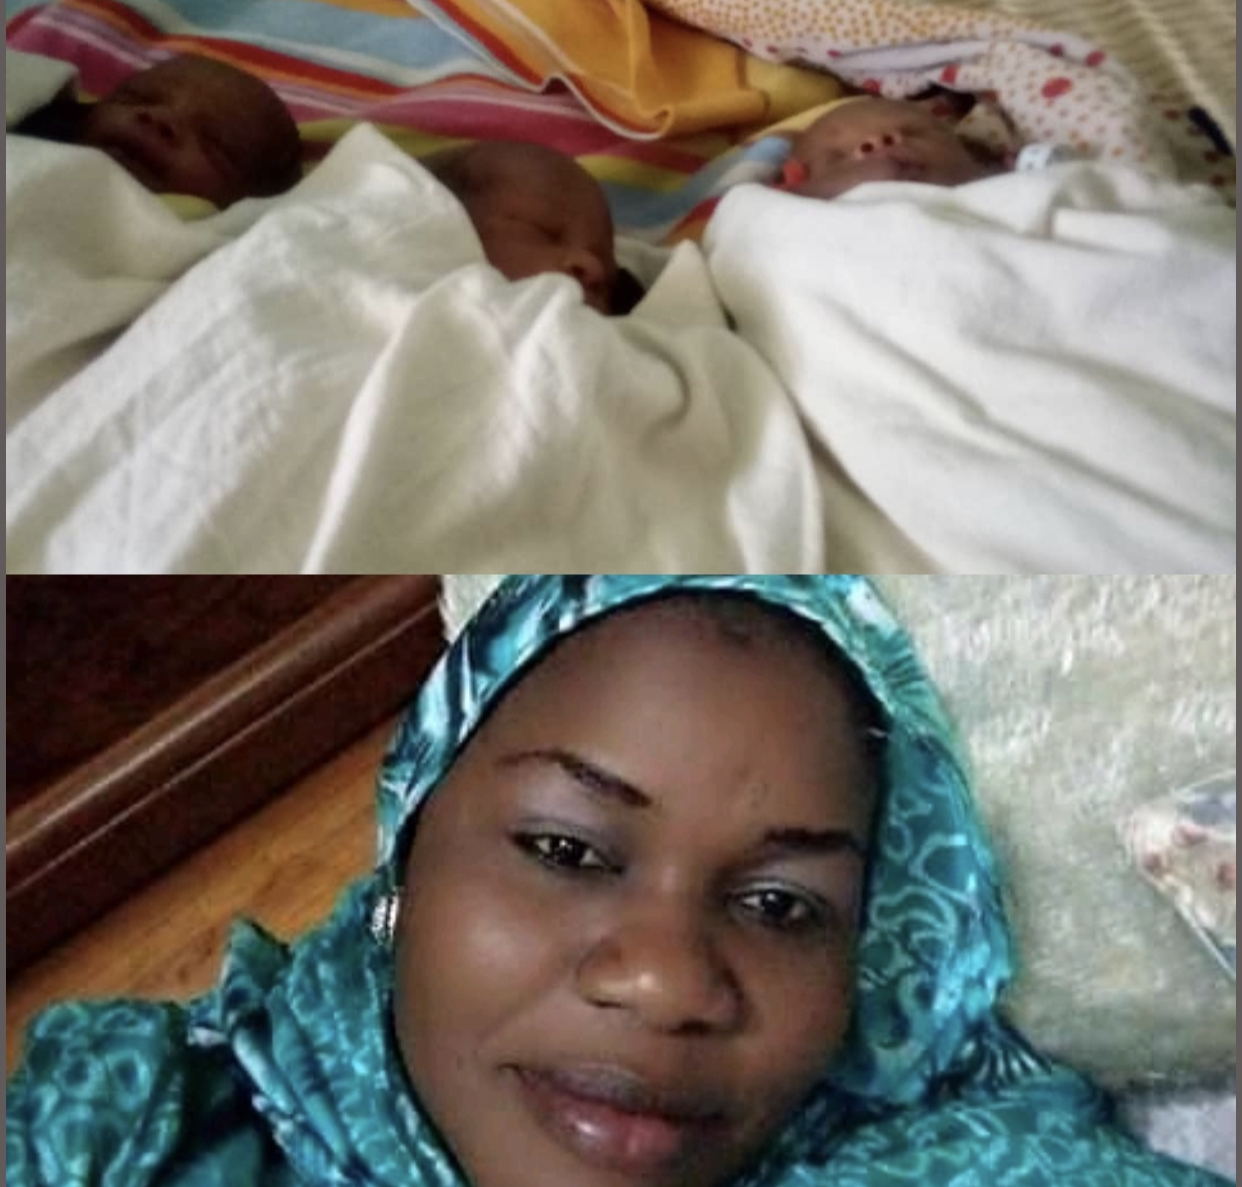 INSOLITE - Trois "bébés couvre-feu" à Touba / Le père baptise ses enfants Macky, Diouf Sarr et Awa l'infirmière.